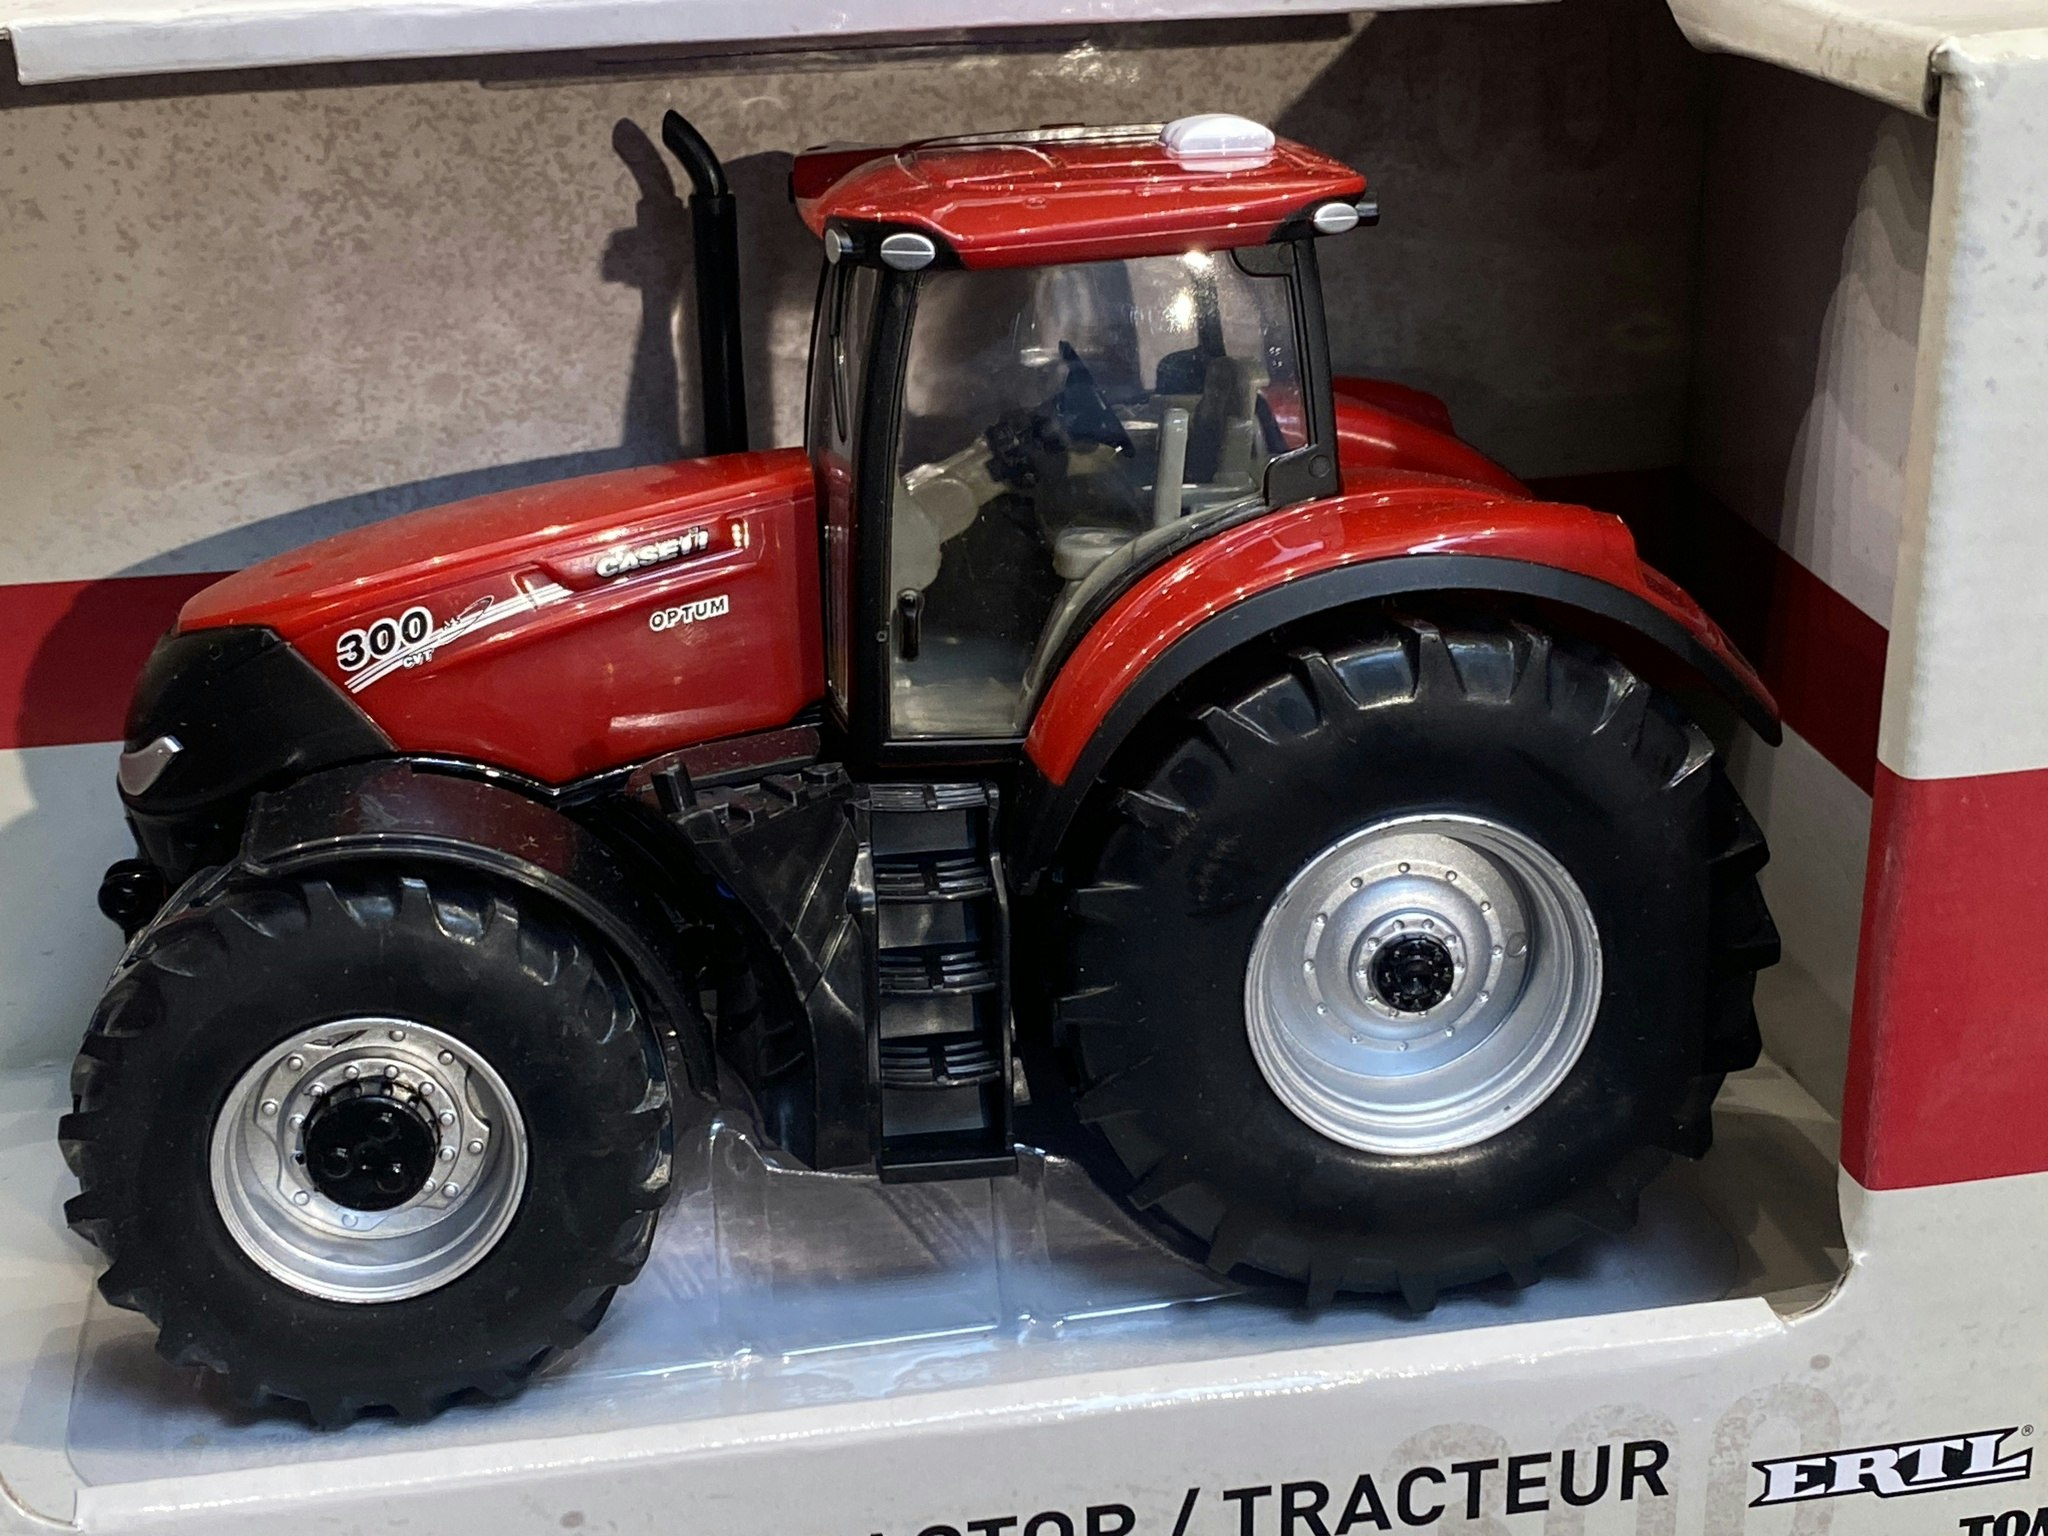 Skala 1/32 Case Optum 300 Traktor från ERTL